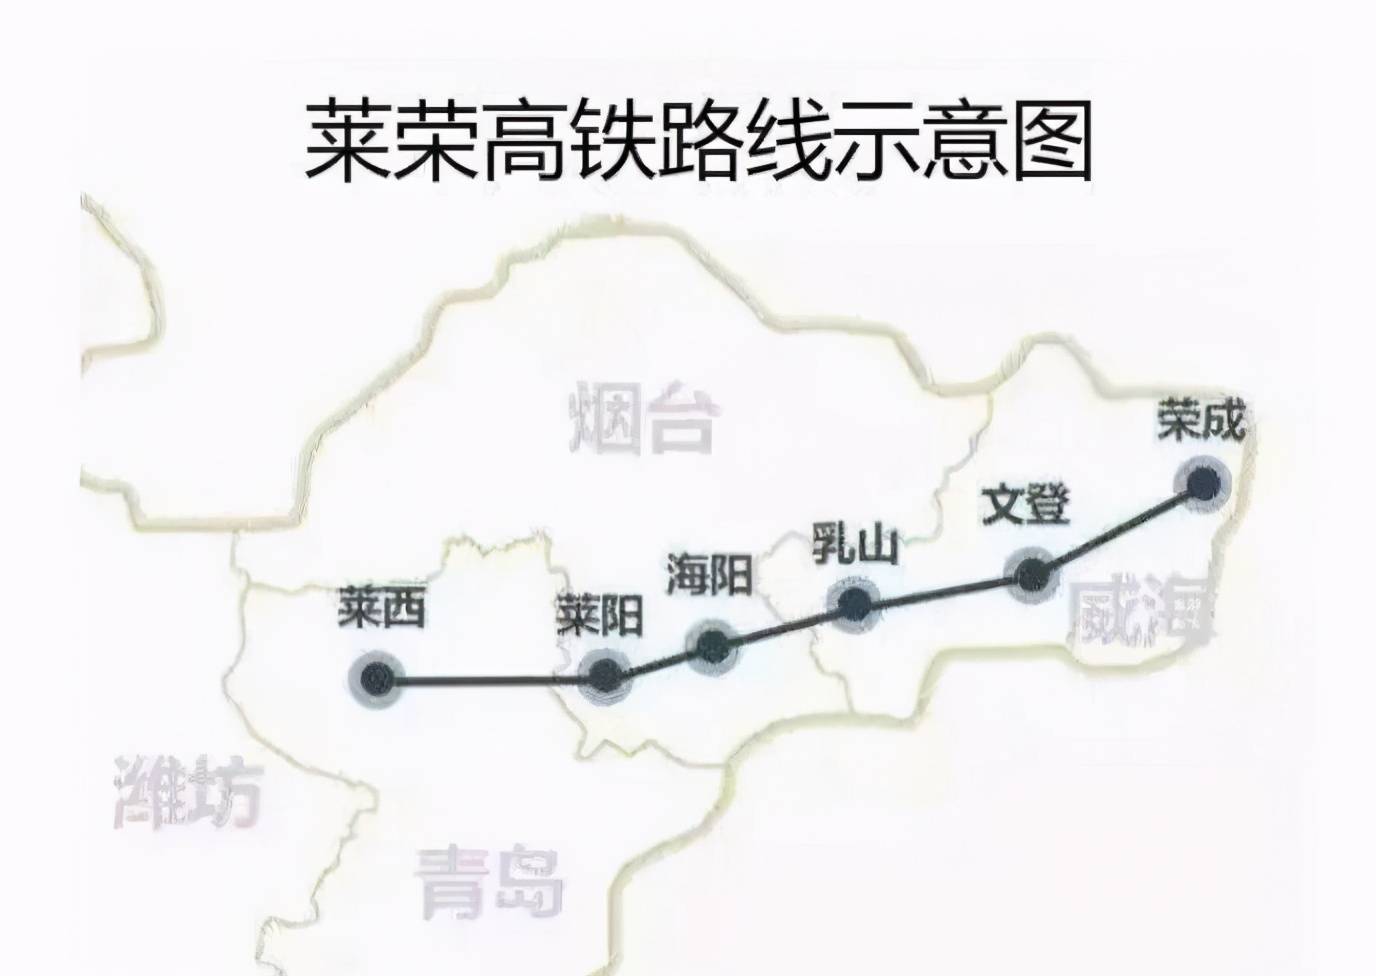 山东建一条高速铁路长193公里烟台和威海将进入高铁时代